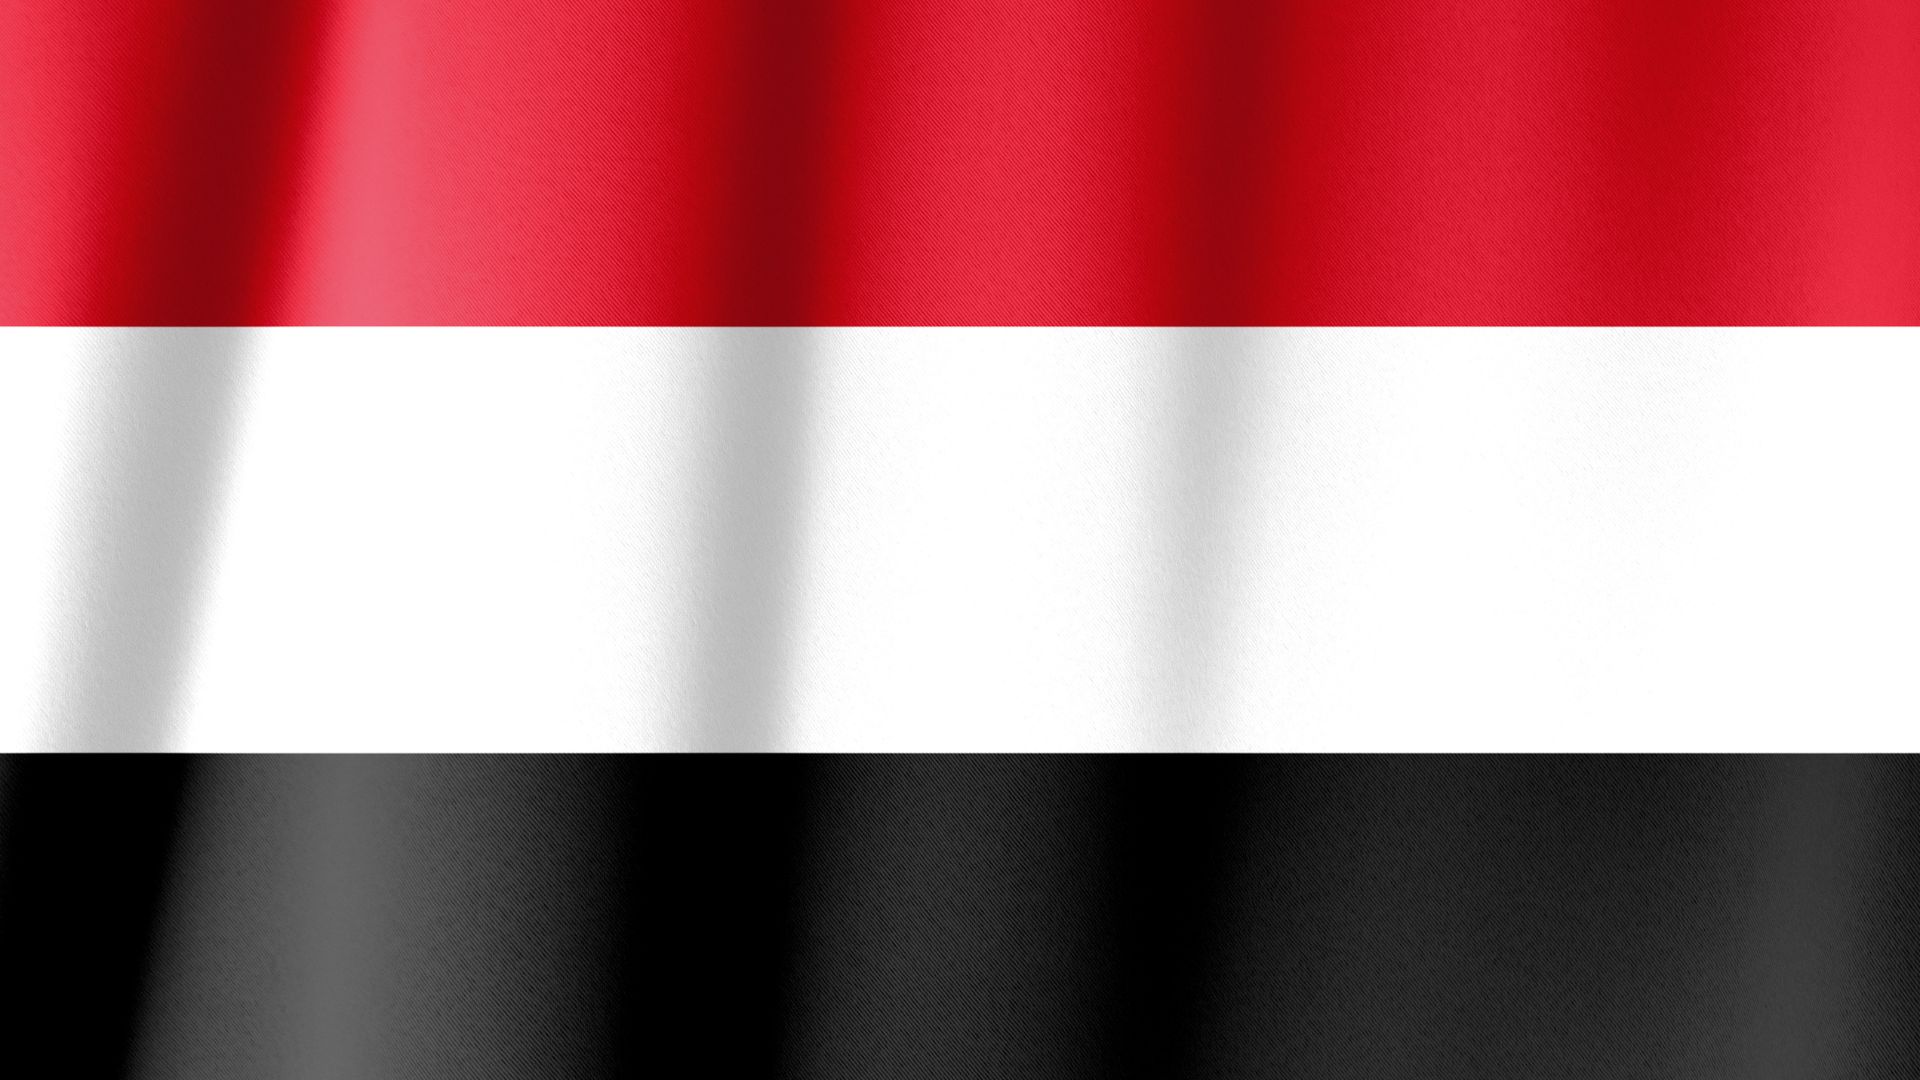 A bandeira do Iêmen tem como padrão três faixas nas cores vermelha, branca e preta.